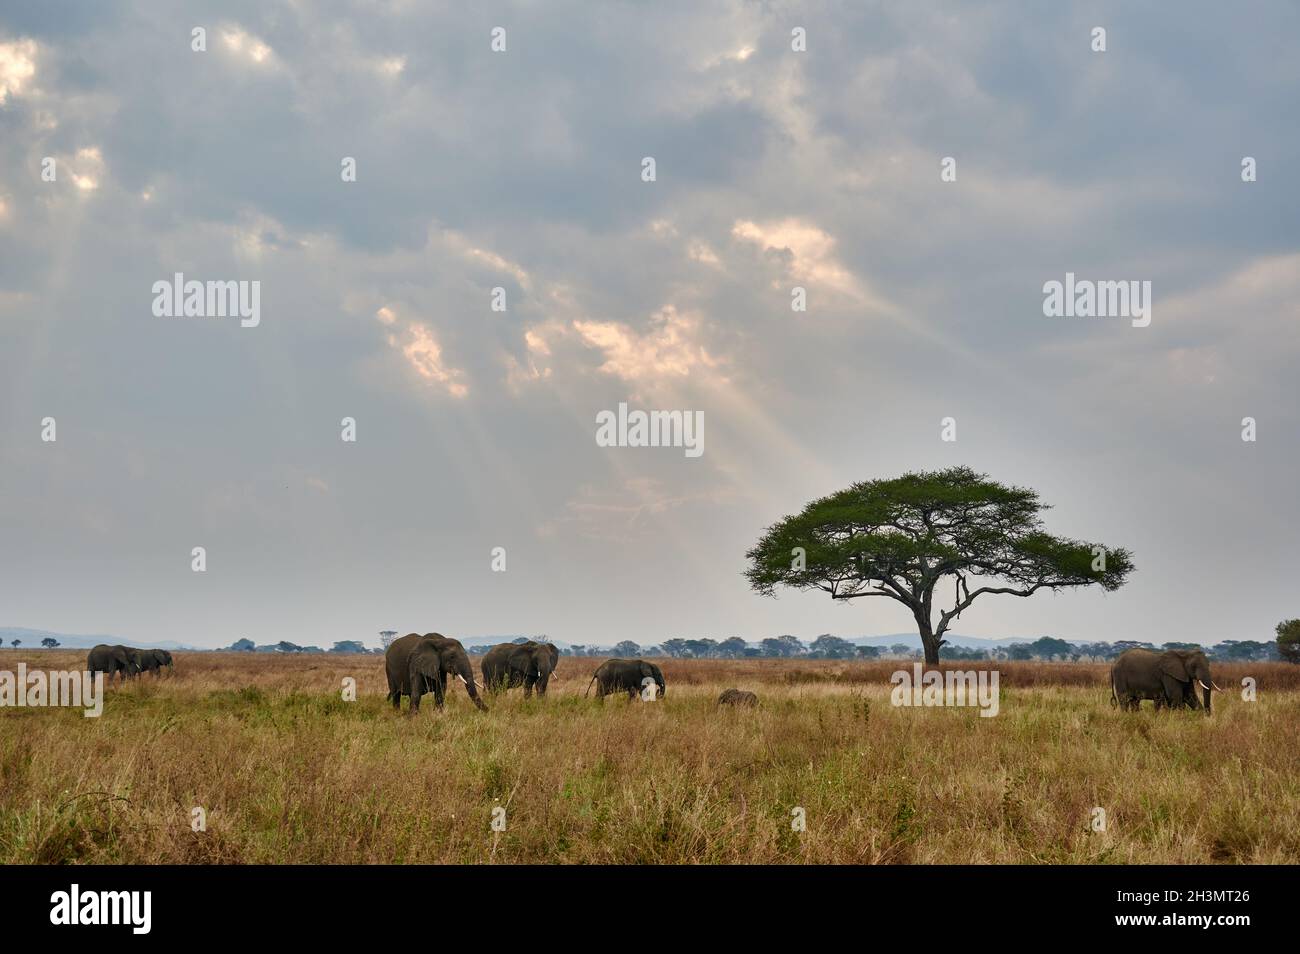 Paysage avec un troupeau d'éléphants d'Afrique (Loxodonta africana) et nuages avec des rayons du soleil, Parc national de Serengeti, Tanzanie, Afrique Banque D'Images